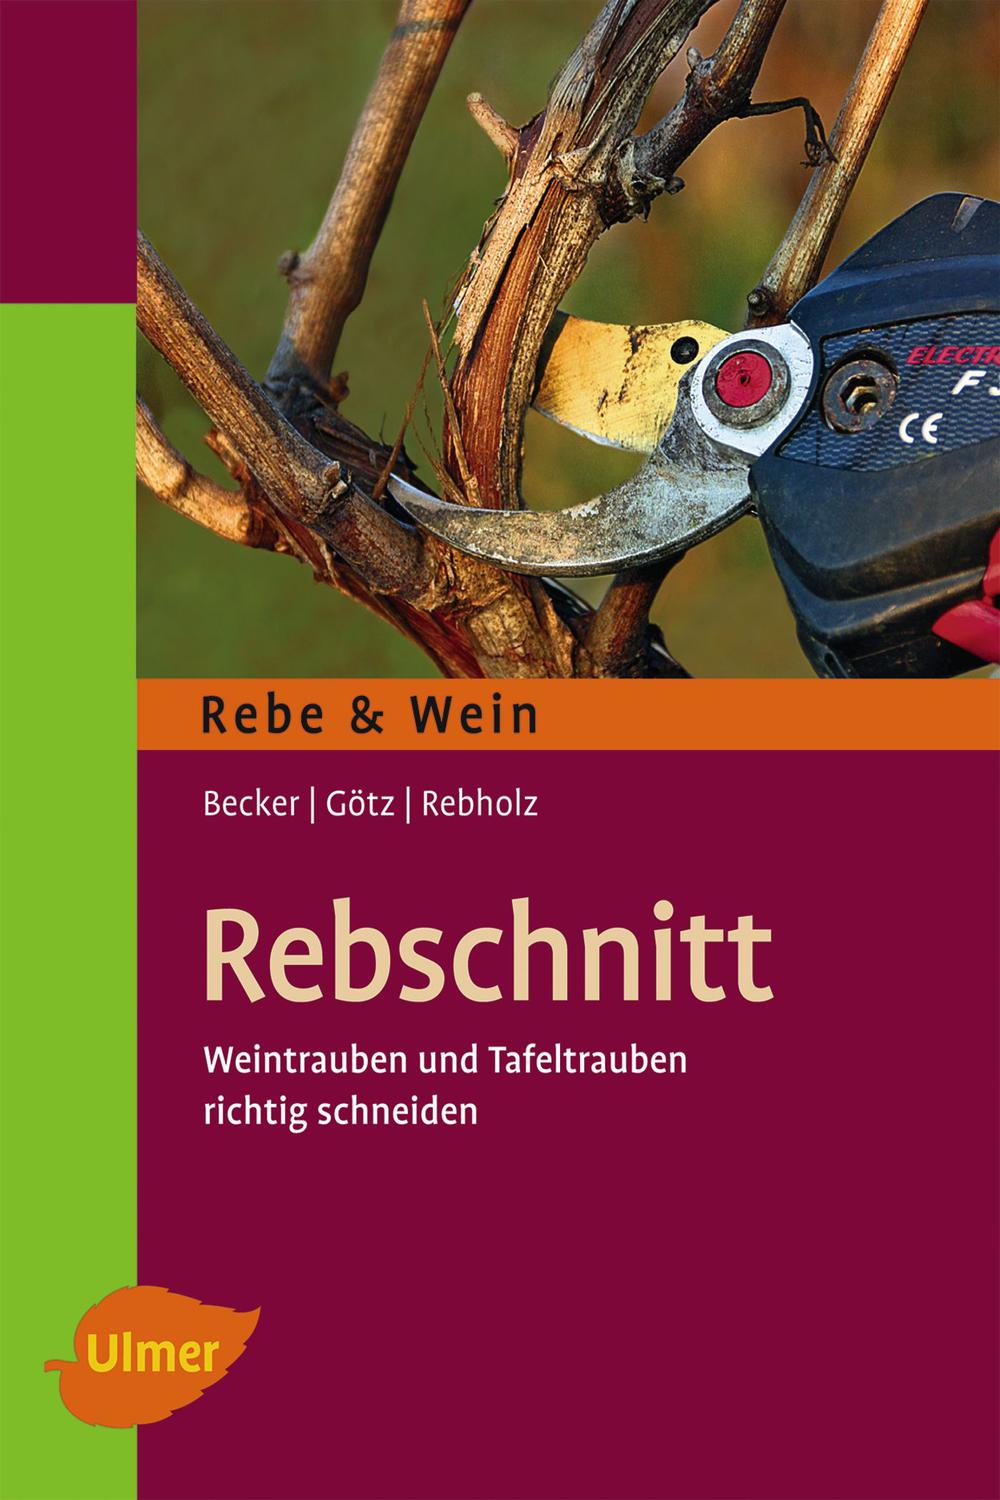 Rebschnitt - Arno Becker, Gerd G?tz, Franz Rebholz,,